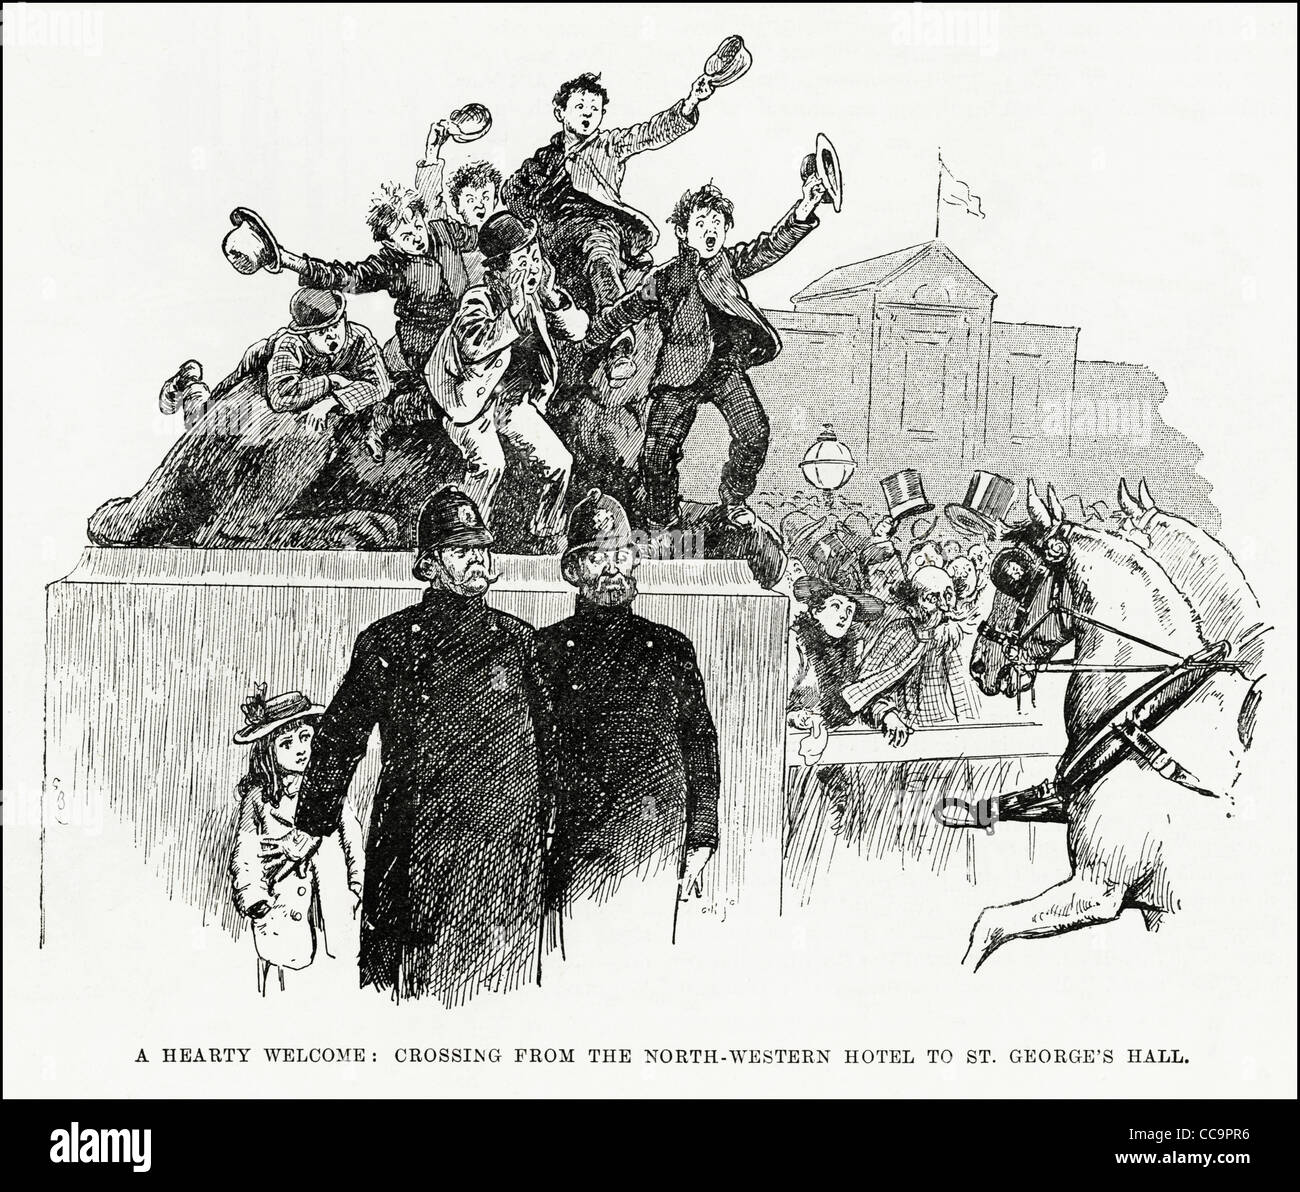 La gravure de l'époque victorienne foule acclamer le premier ministre libéral William Ewart Gladstone visite à Liverpool en 1892 avec les agents de police la protection de la jeune fille. Banque D'Images